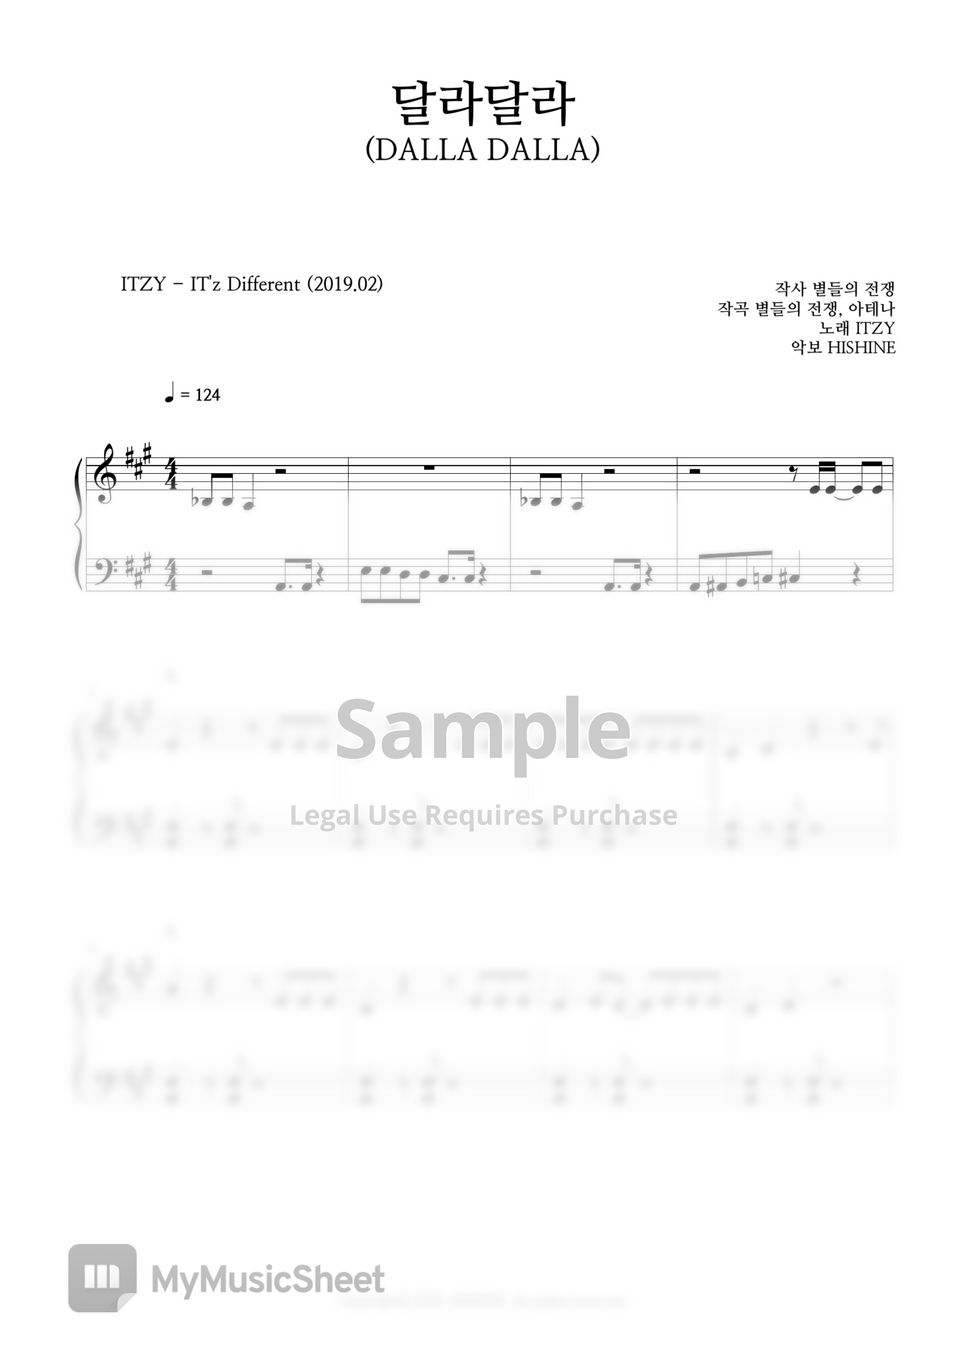 ITZY - DALLA DALLA Easy Piano Sheet